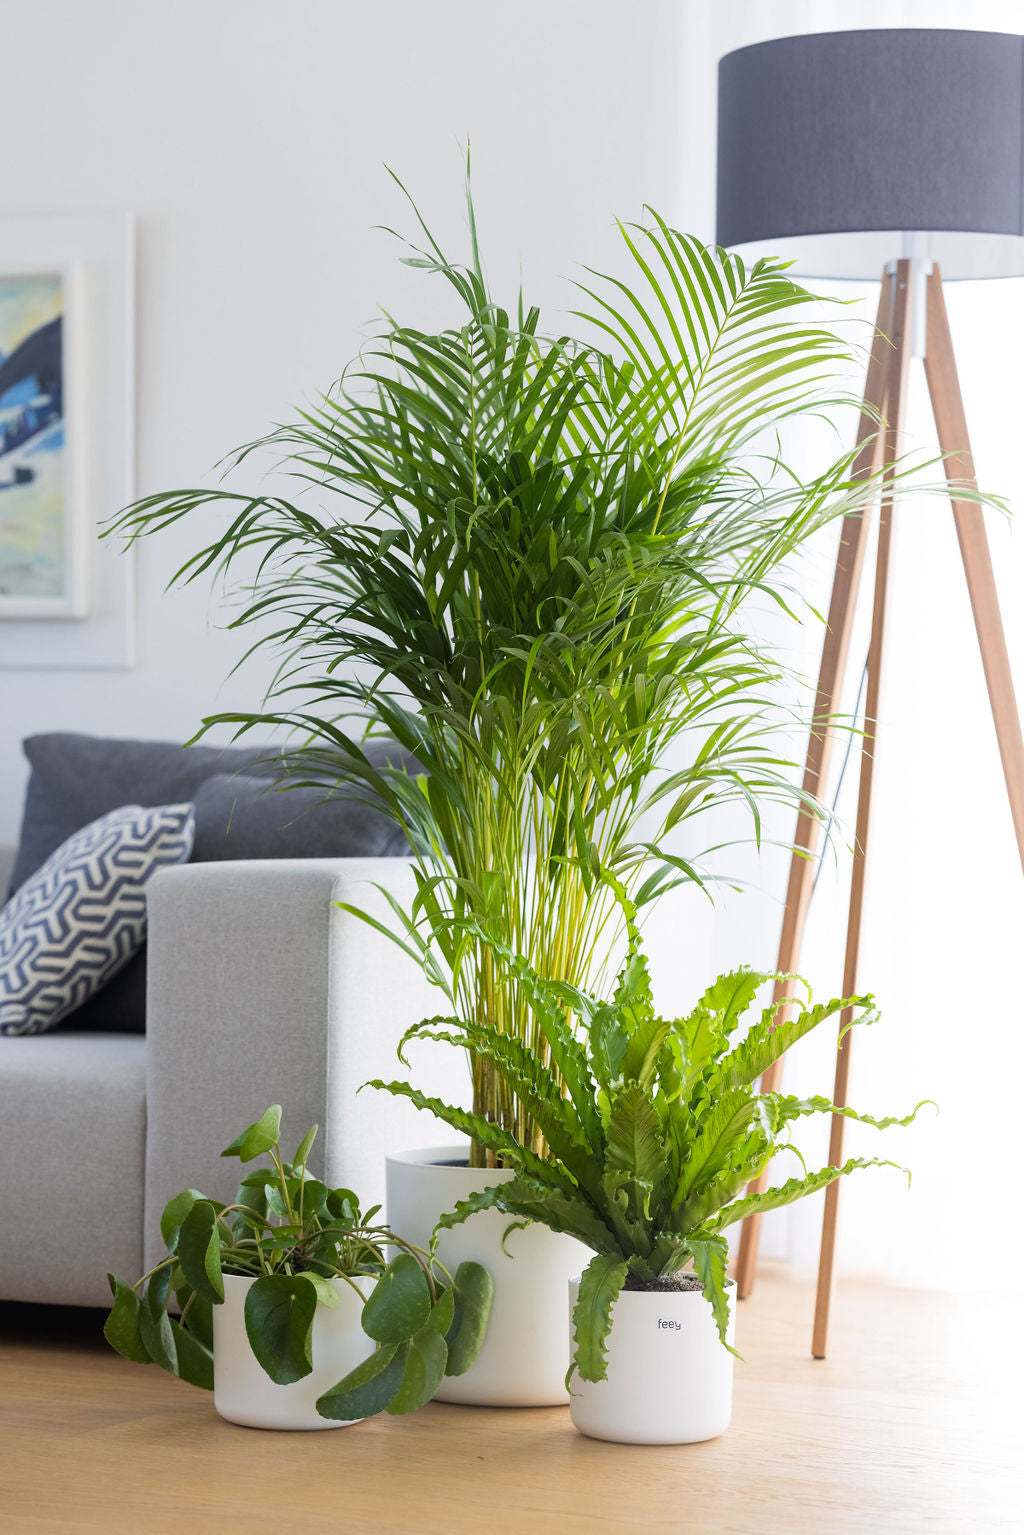 inspiration für dein schönes wohnzimmer mit pflanzen